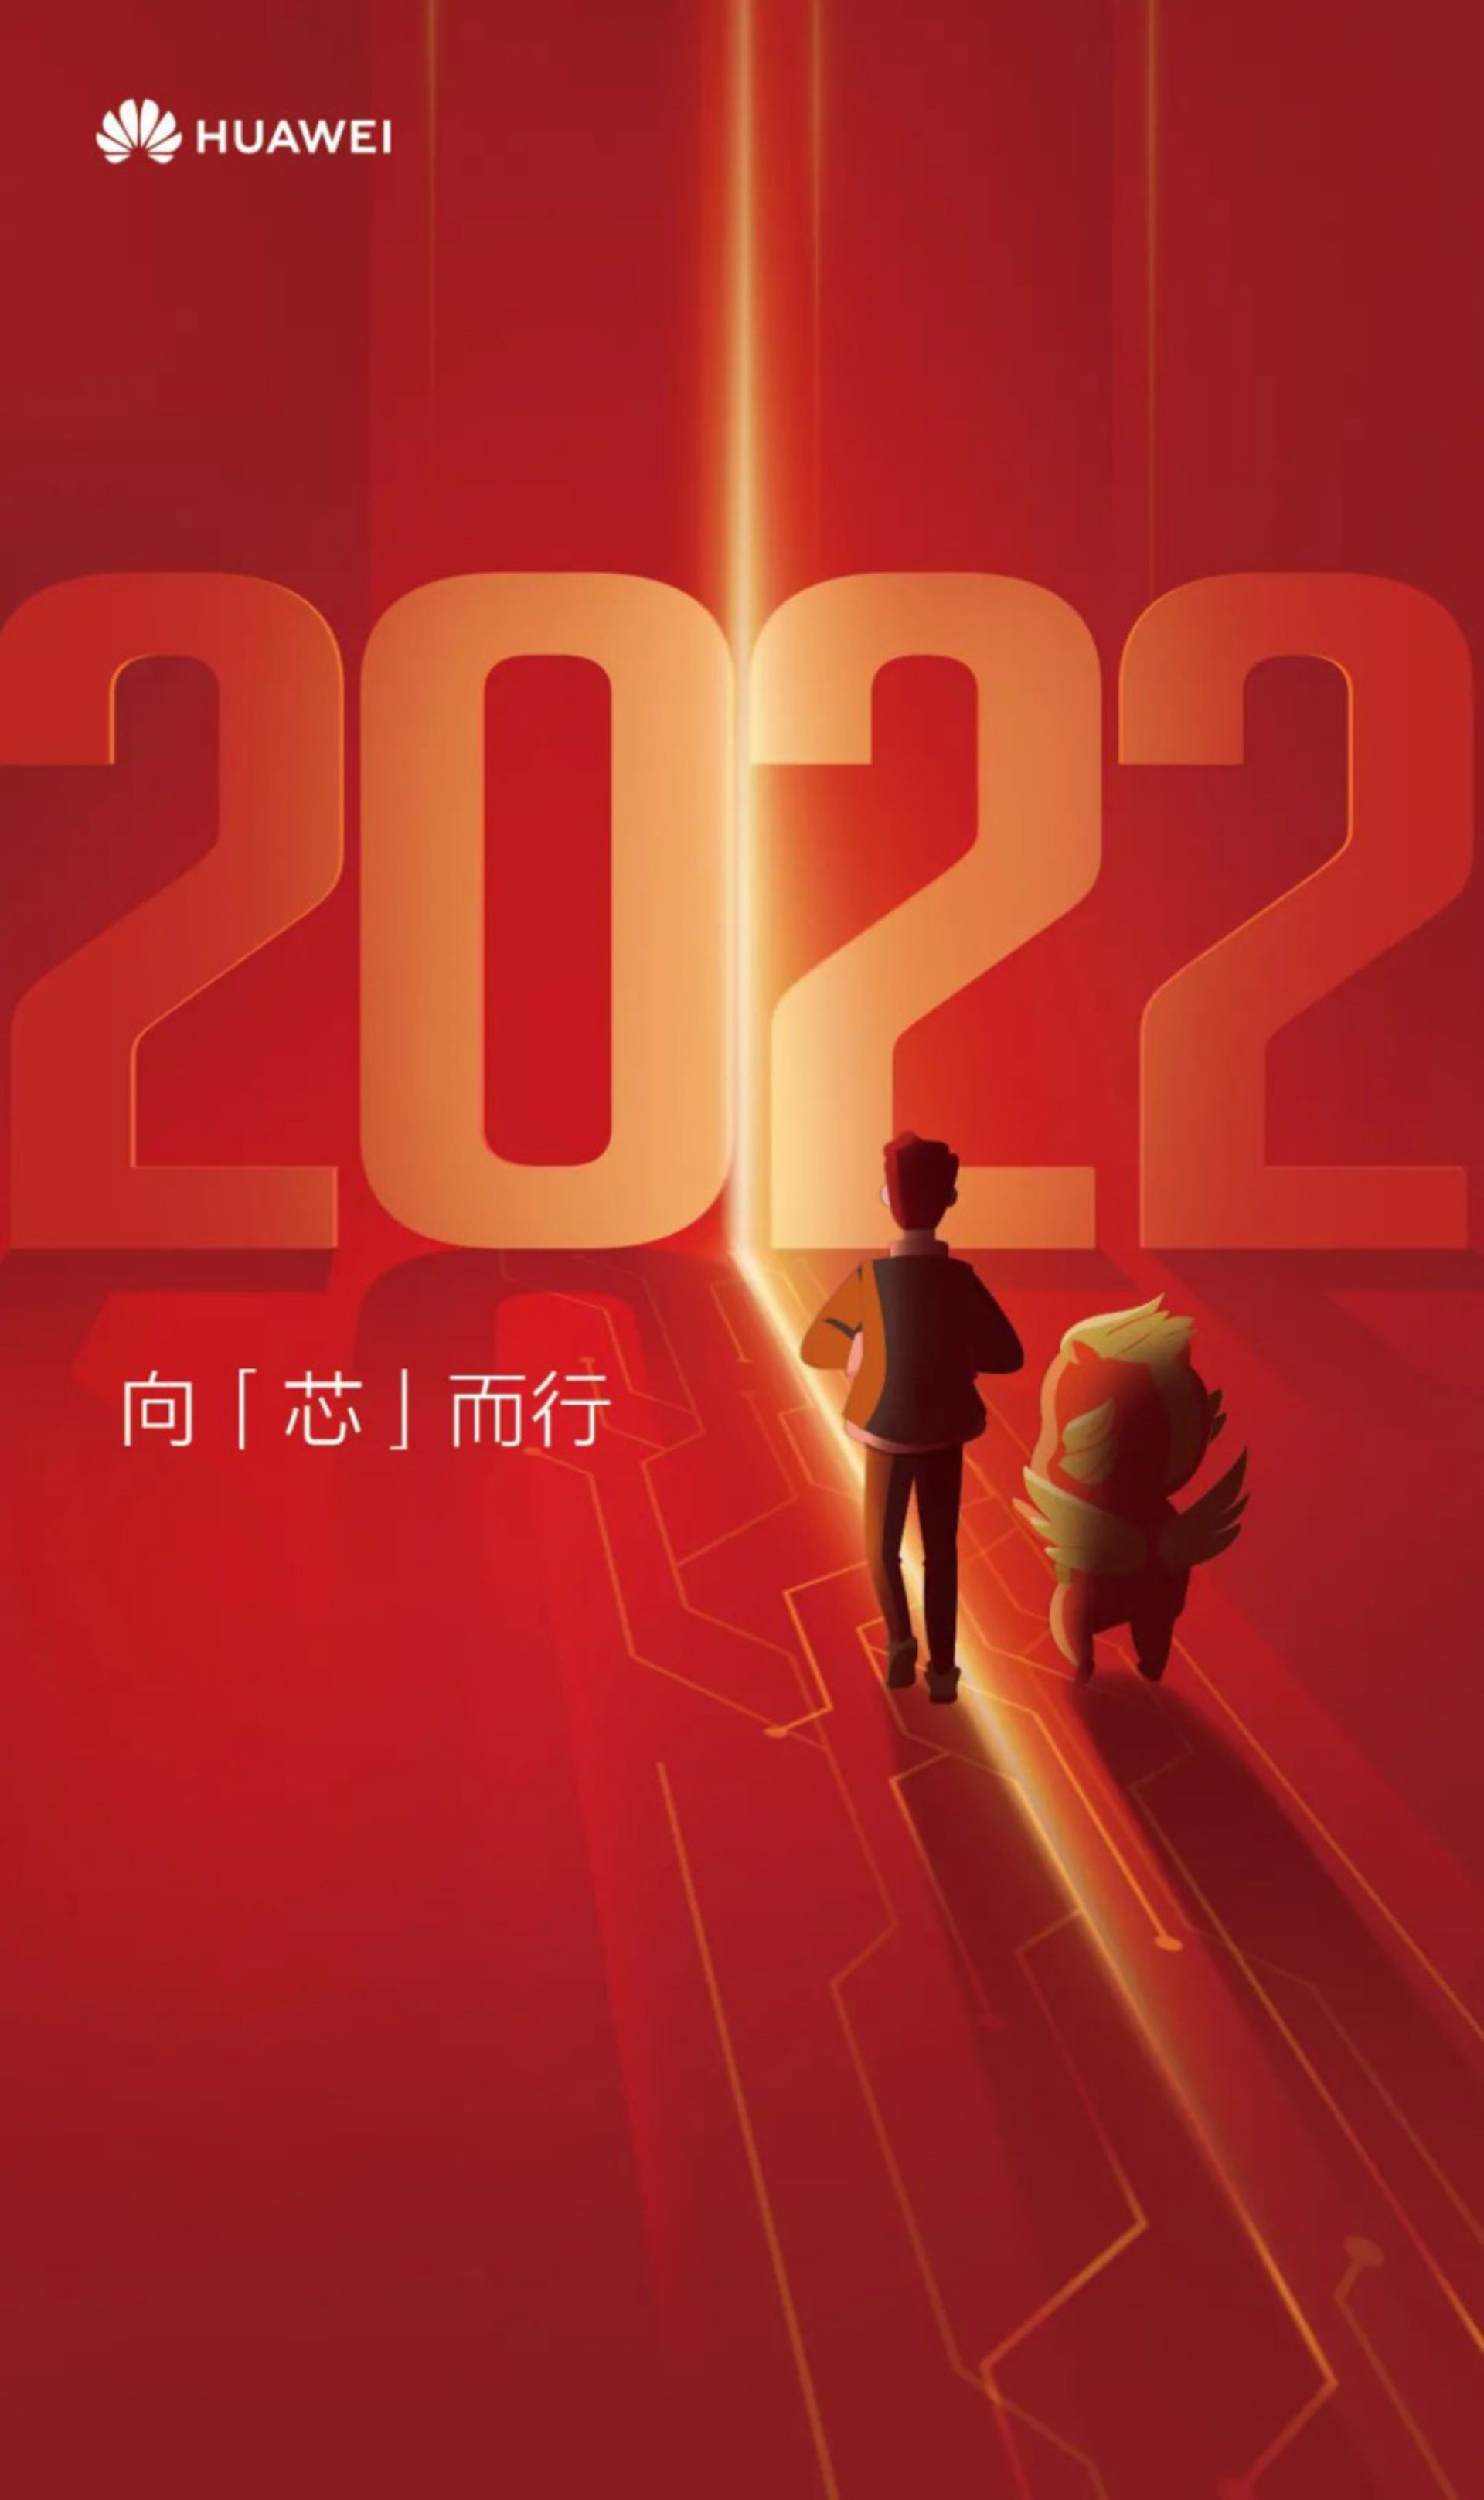 پوستر هواوی برای اعلام تولید مجدد تراشه در سال ۲۰۲۲